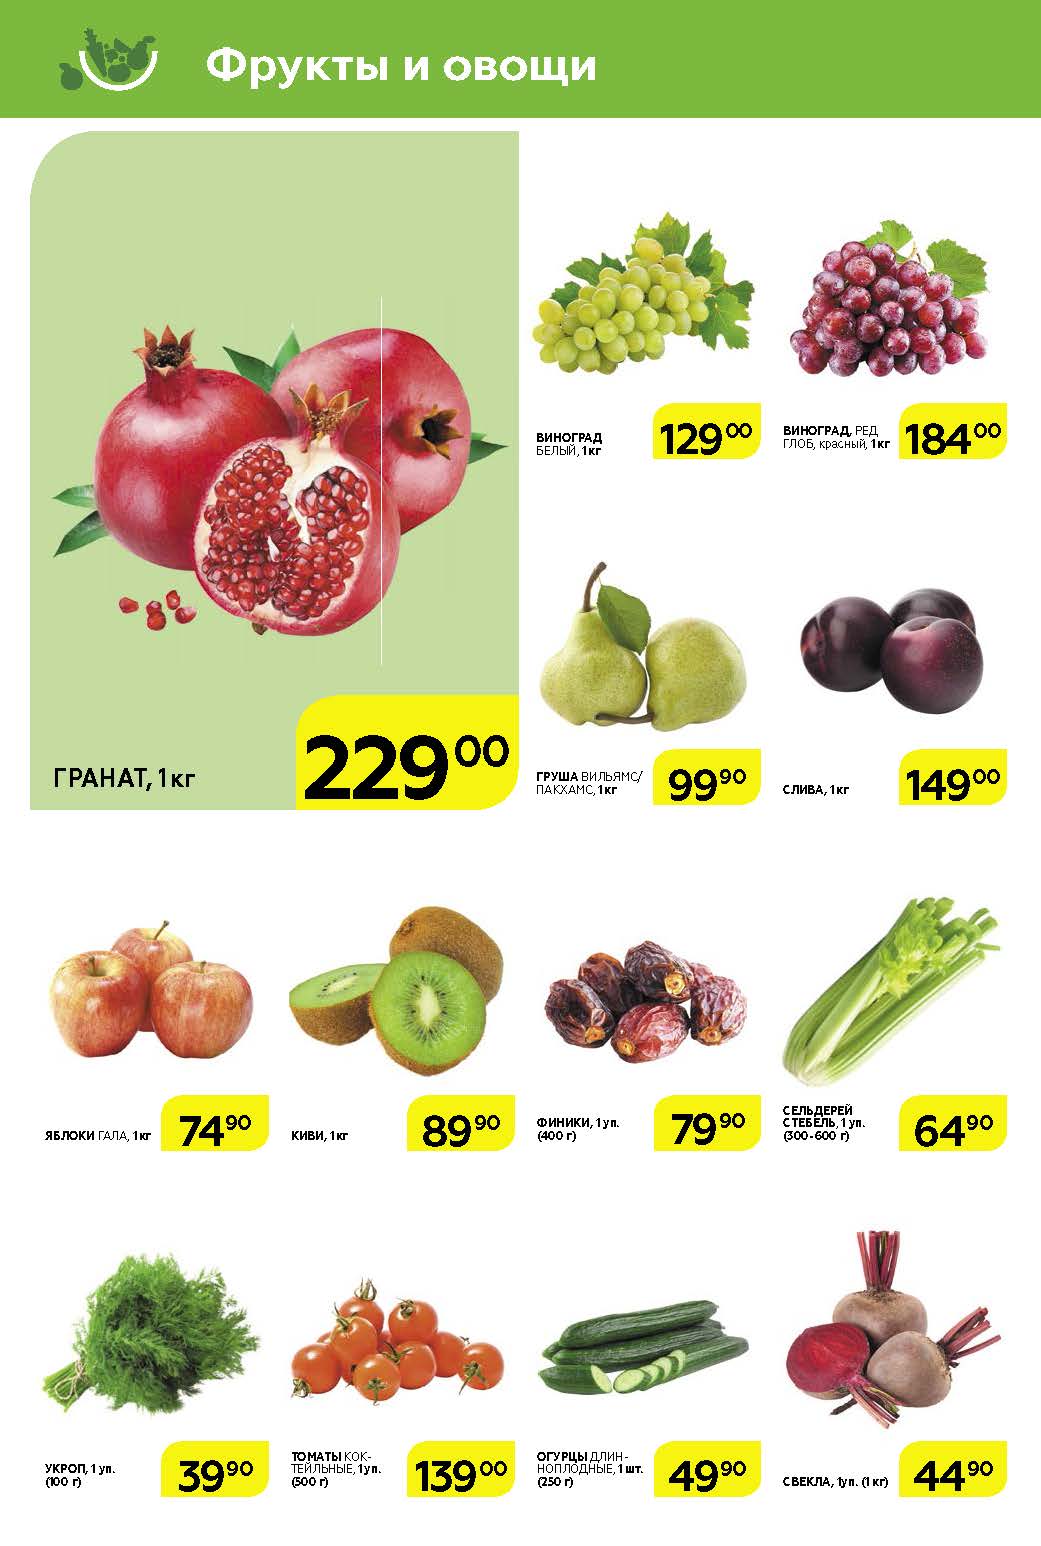 60 килограмм фруктов. Магниты «фрукты». Магнит каталог фруктов. Фрукты в магазине магнит. Магниты «овощи».